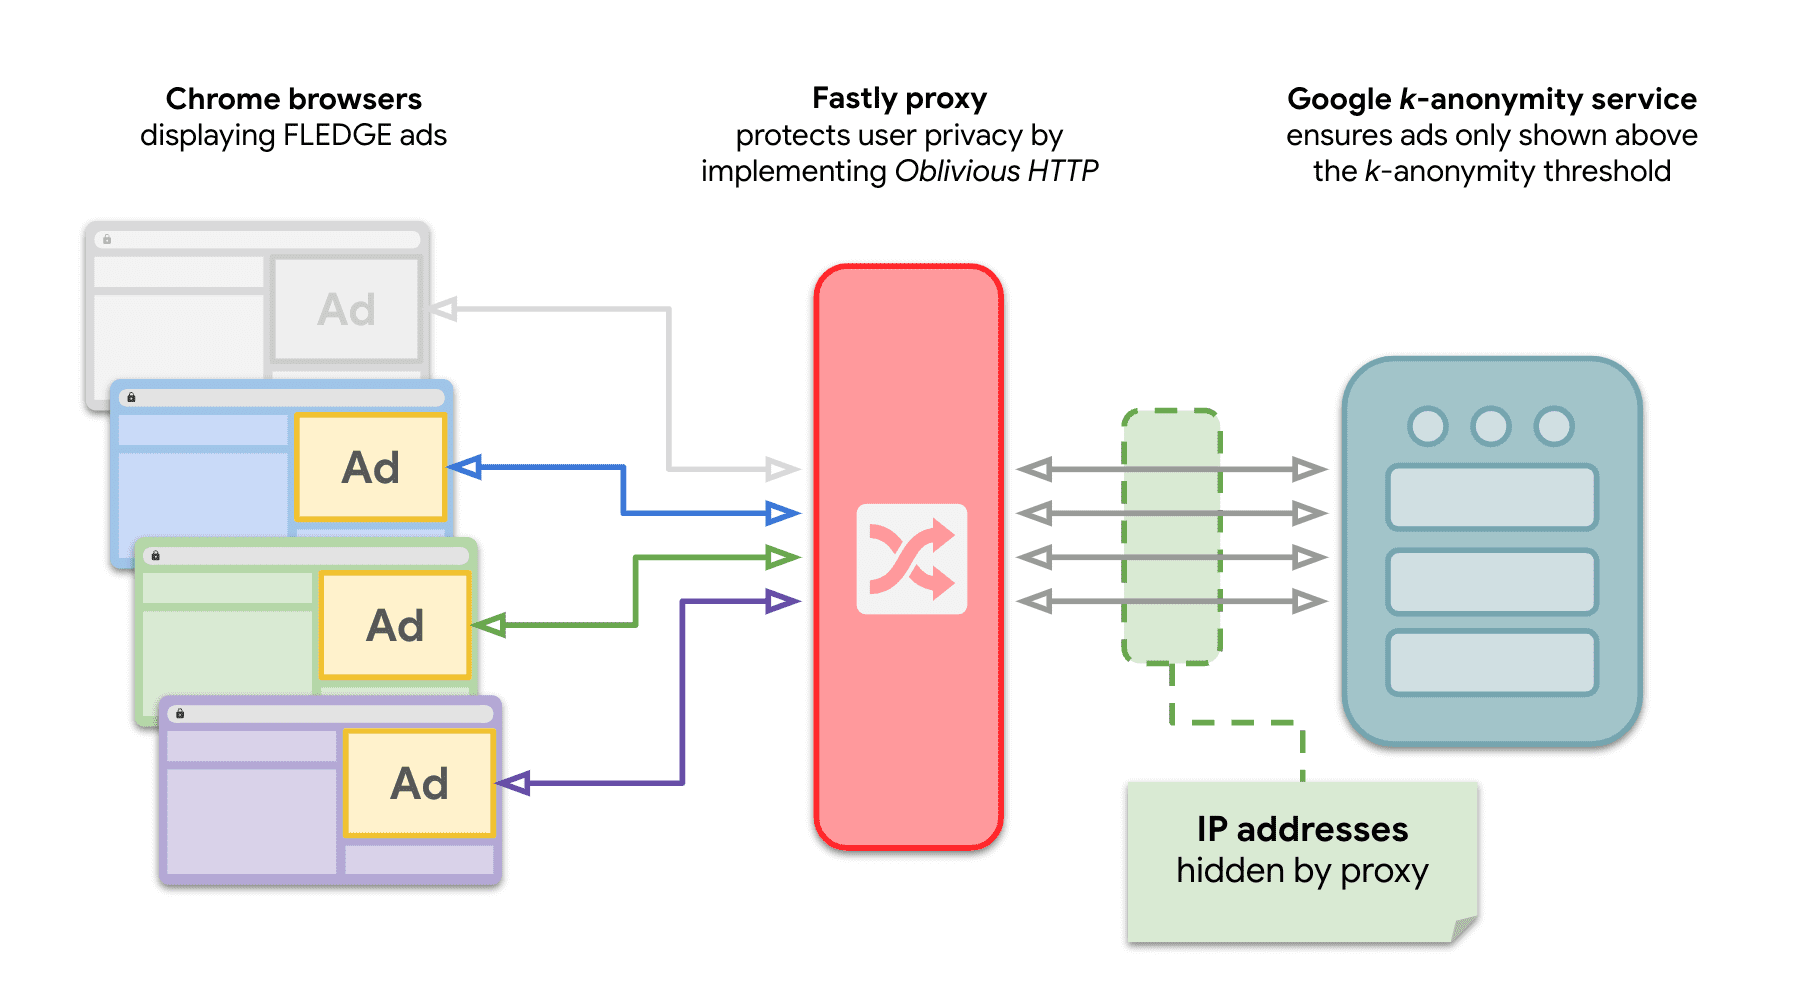 نموداری که نشان می‌دهد چندین سایت در Chrome درخواست‌هایی را به سرور 𝑘-anonymity ارسال می‌کنند تا تبلیغات FLEDGE را با رله OHTTP در بین آن‌ها ارائه دهند.